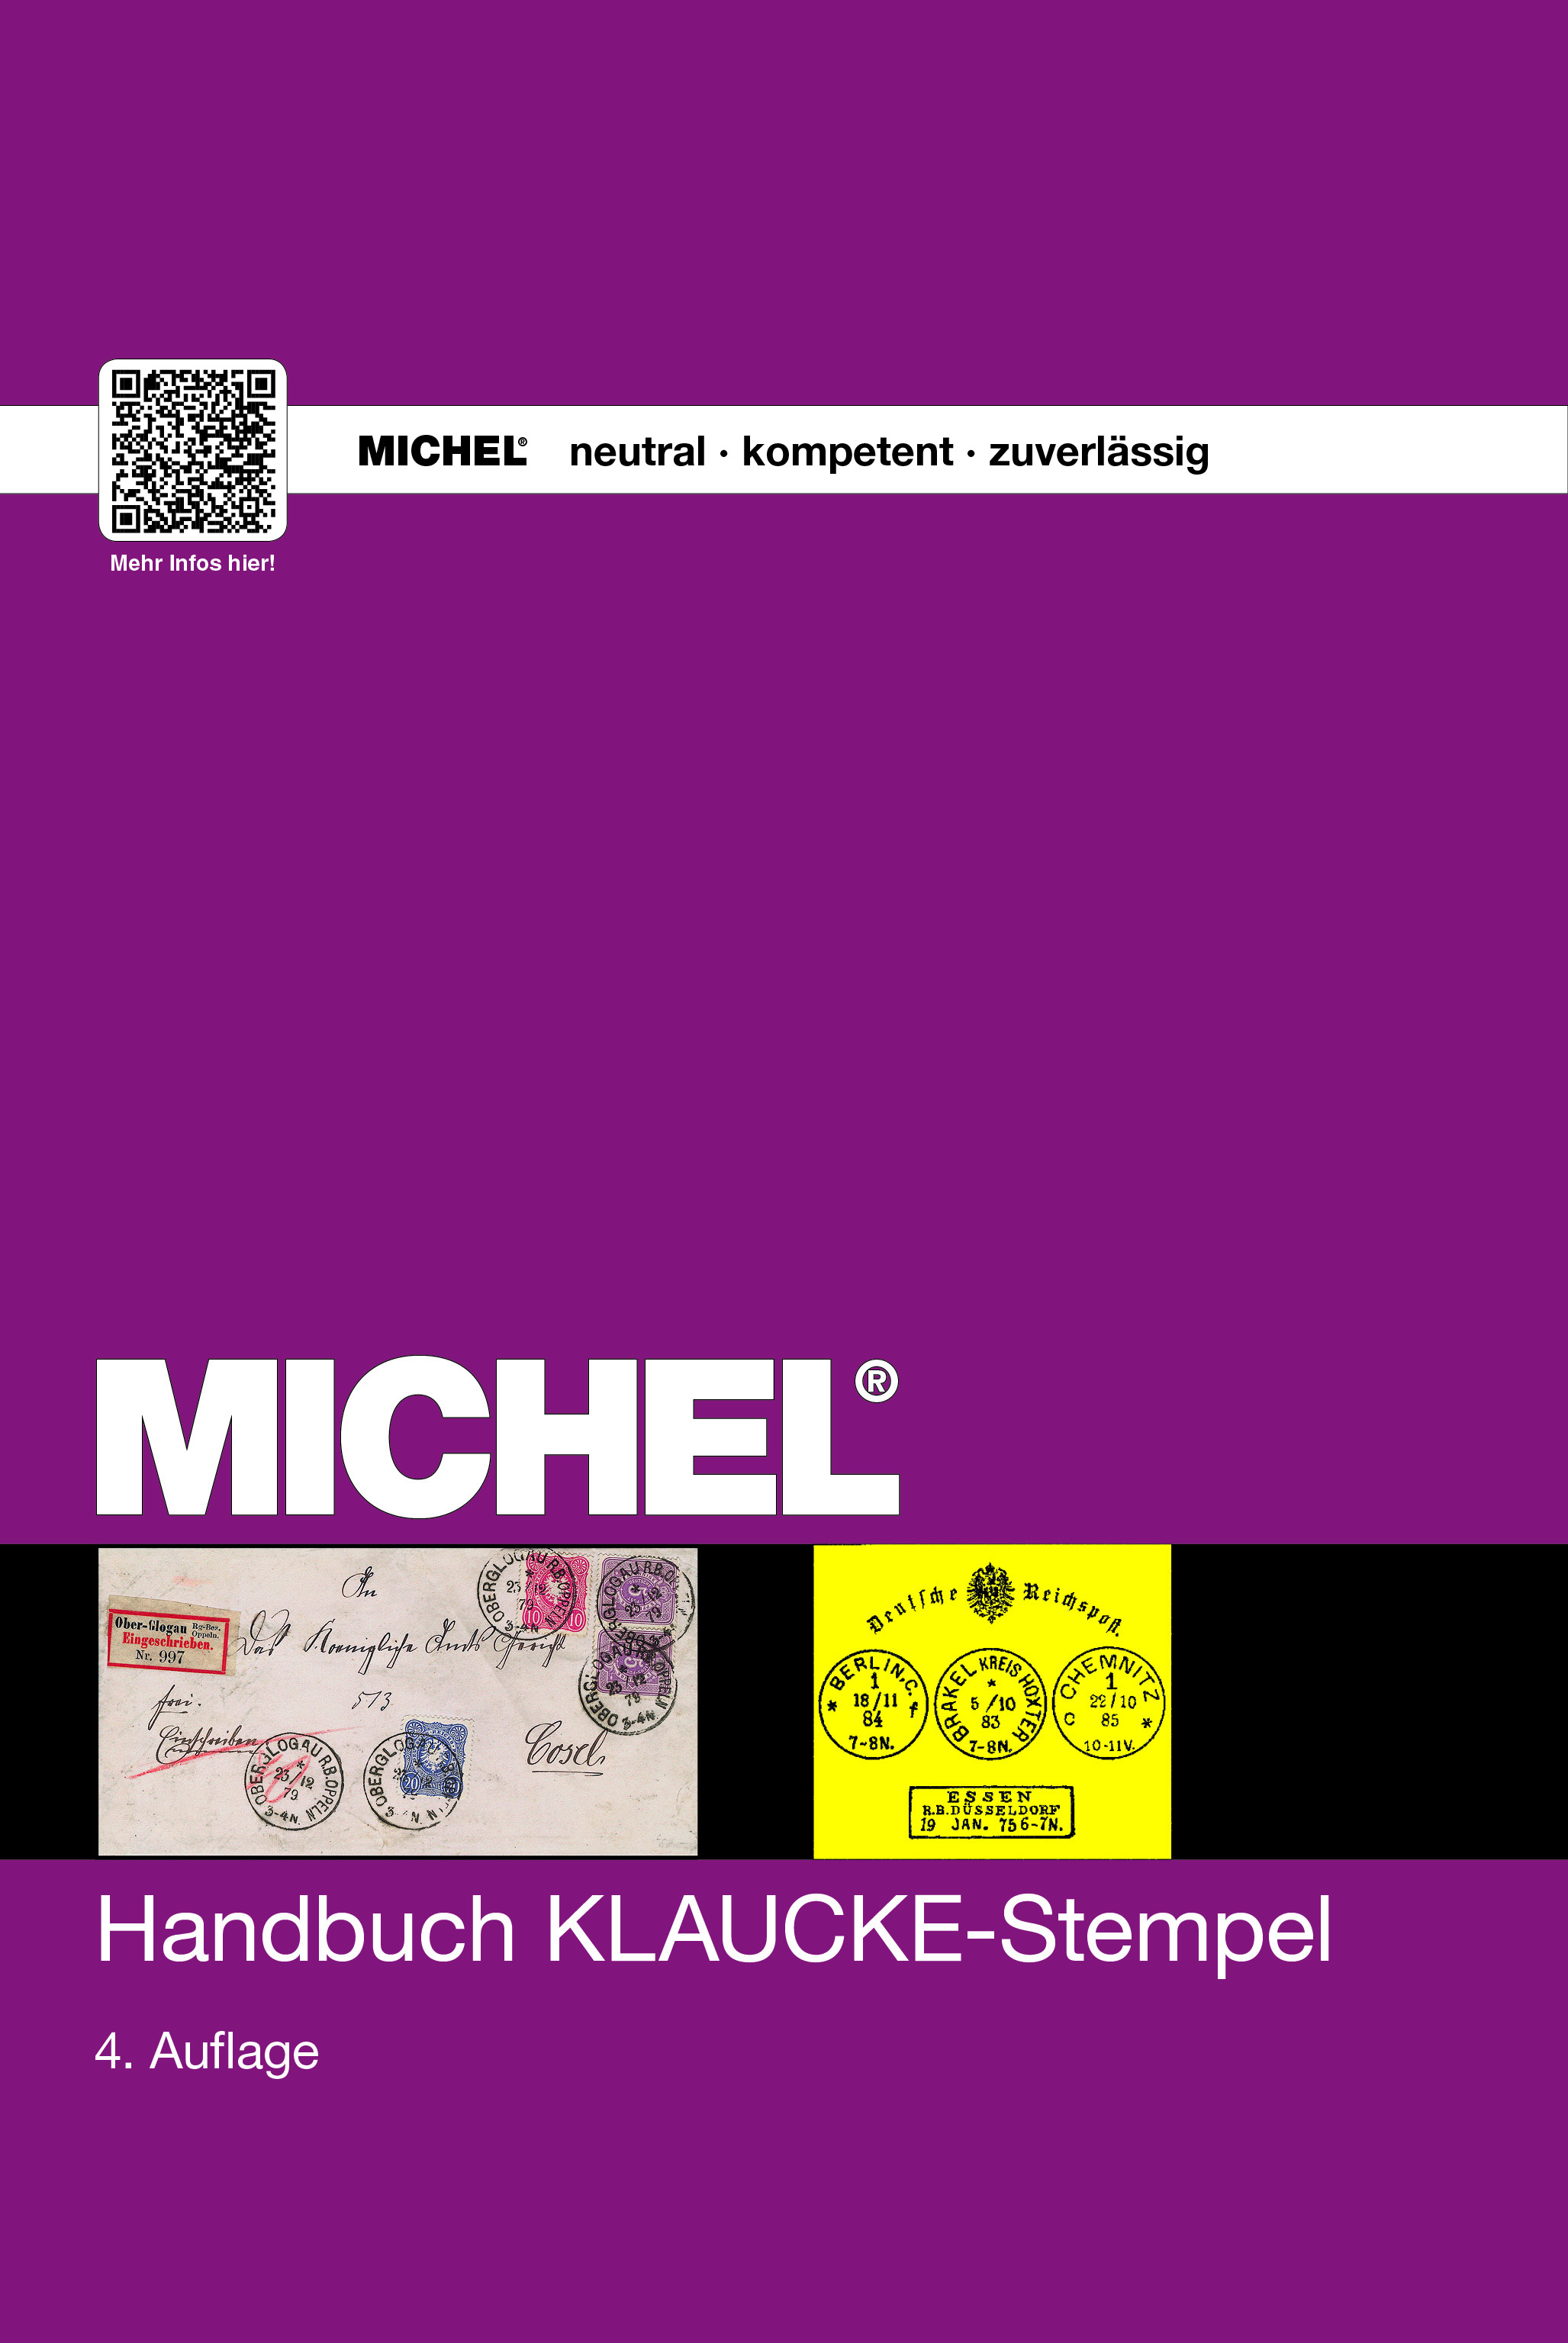 Handbuch KLAUCKE-Stempel  - MICHEL katalog 